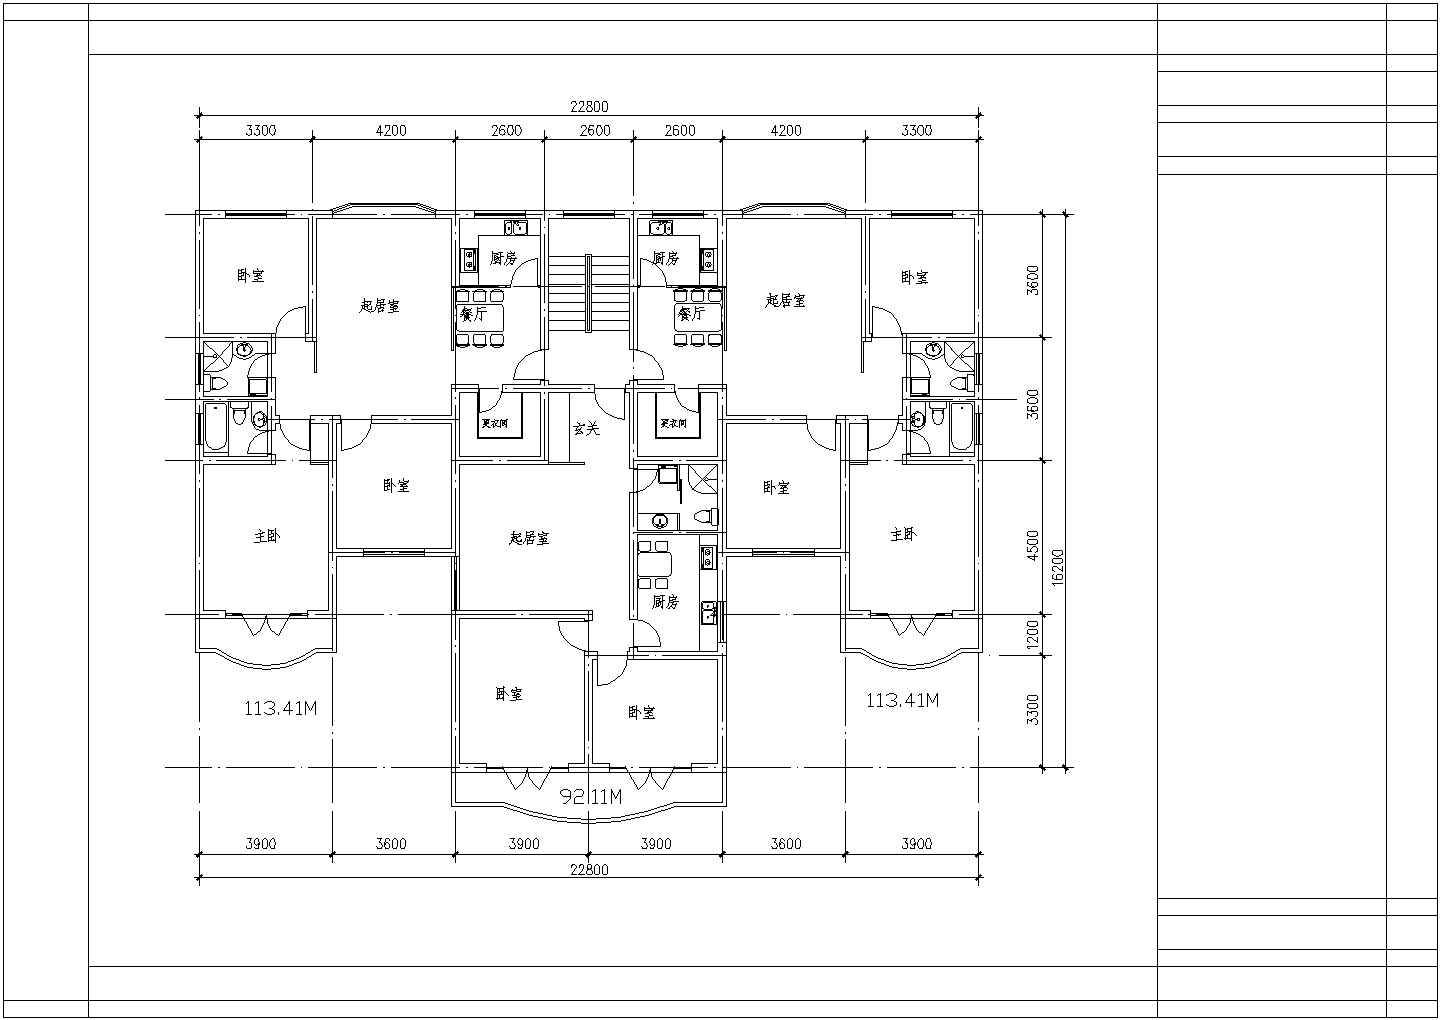 典型建筑面积110至120平米的户型住宅设计cad建筑平面方案图